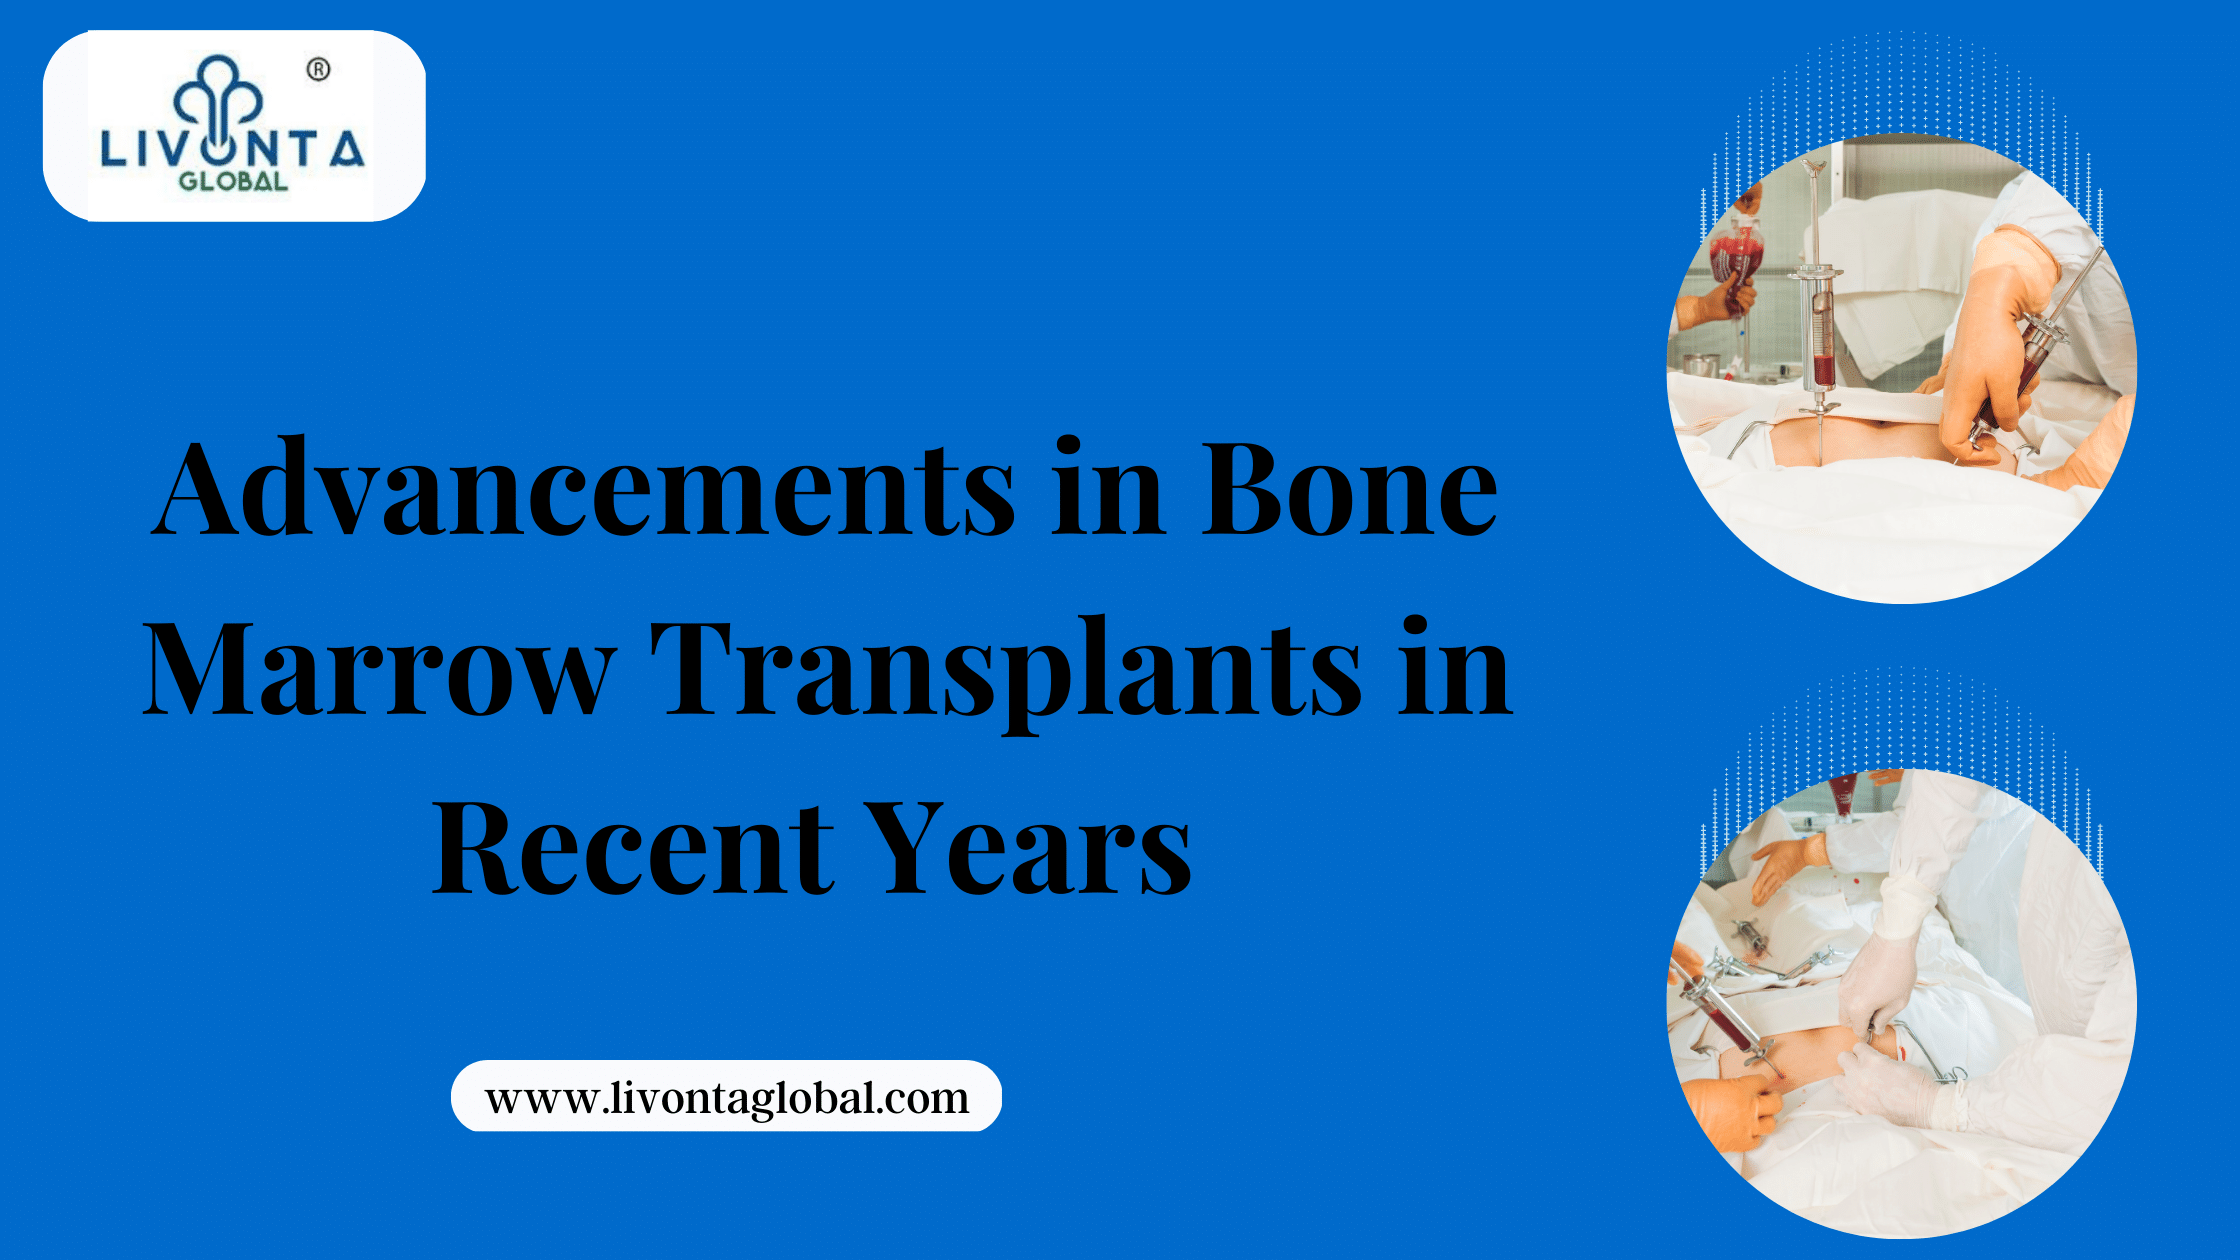 Advancements in bone marrow transplants in recent years